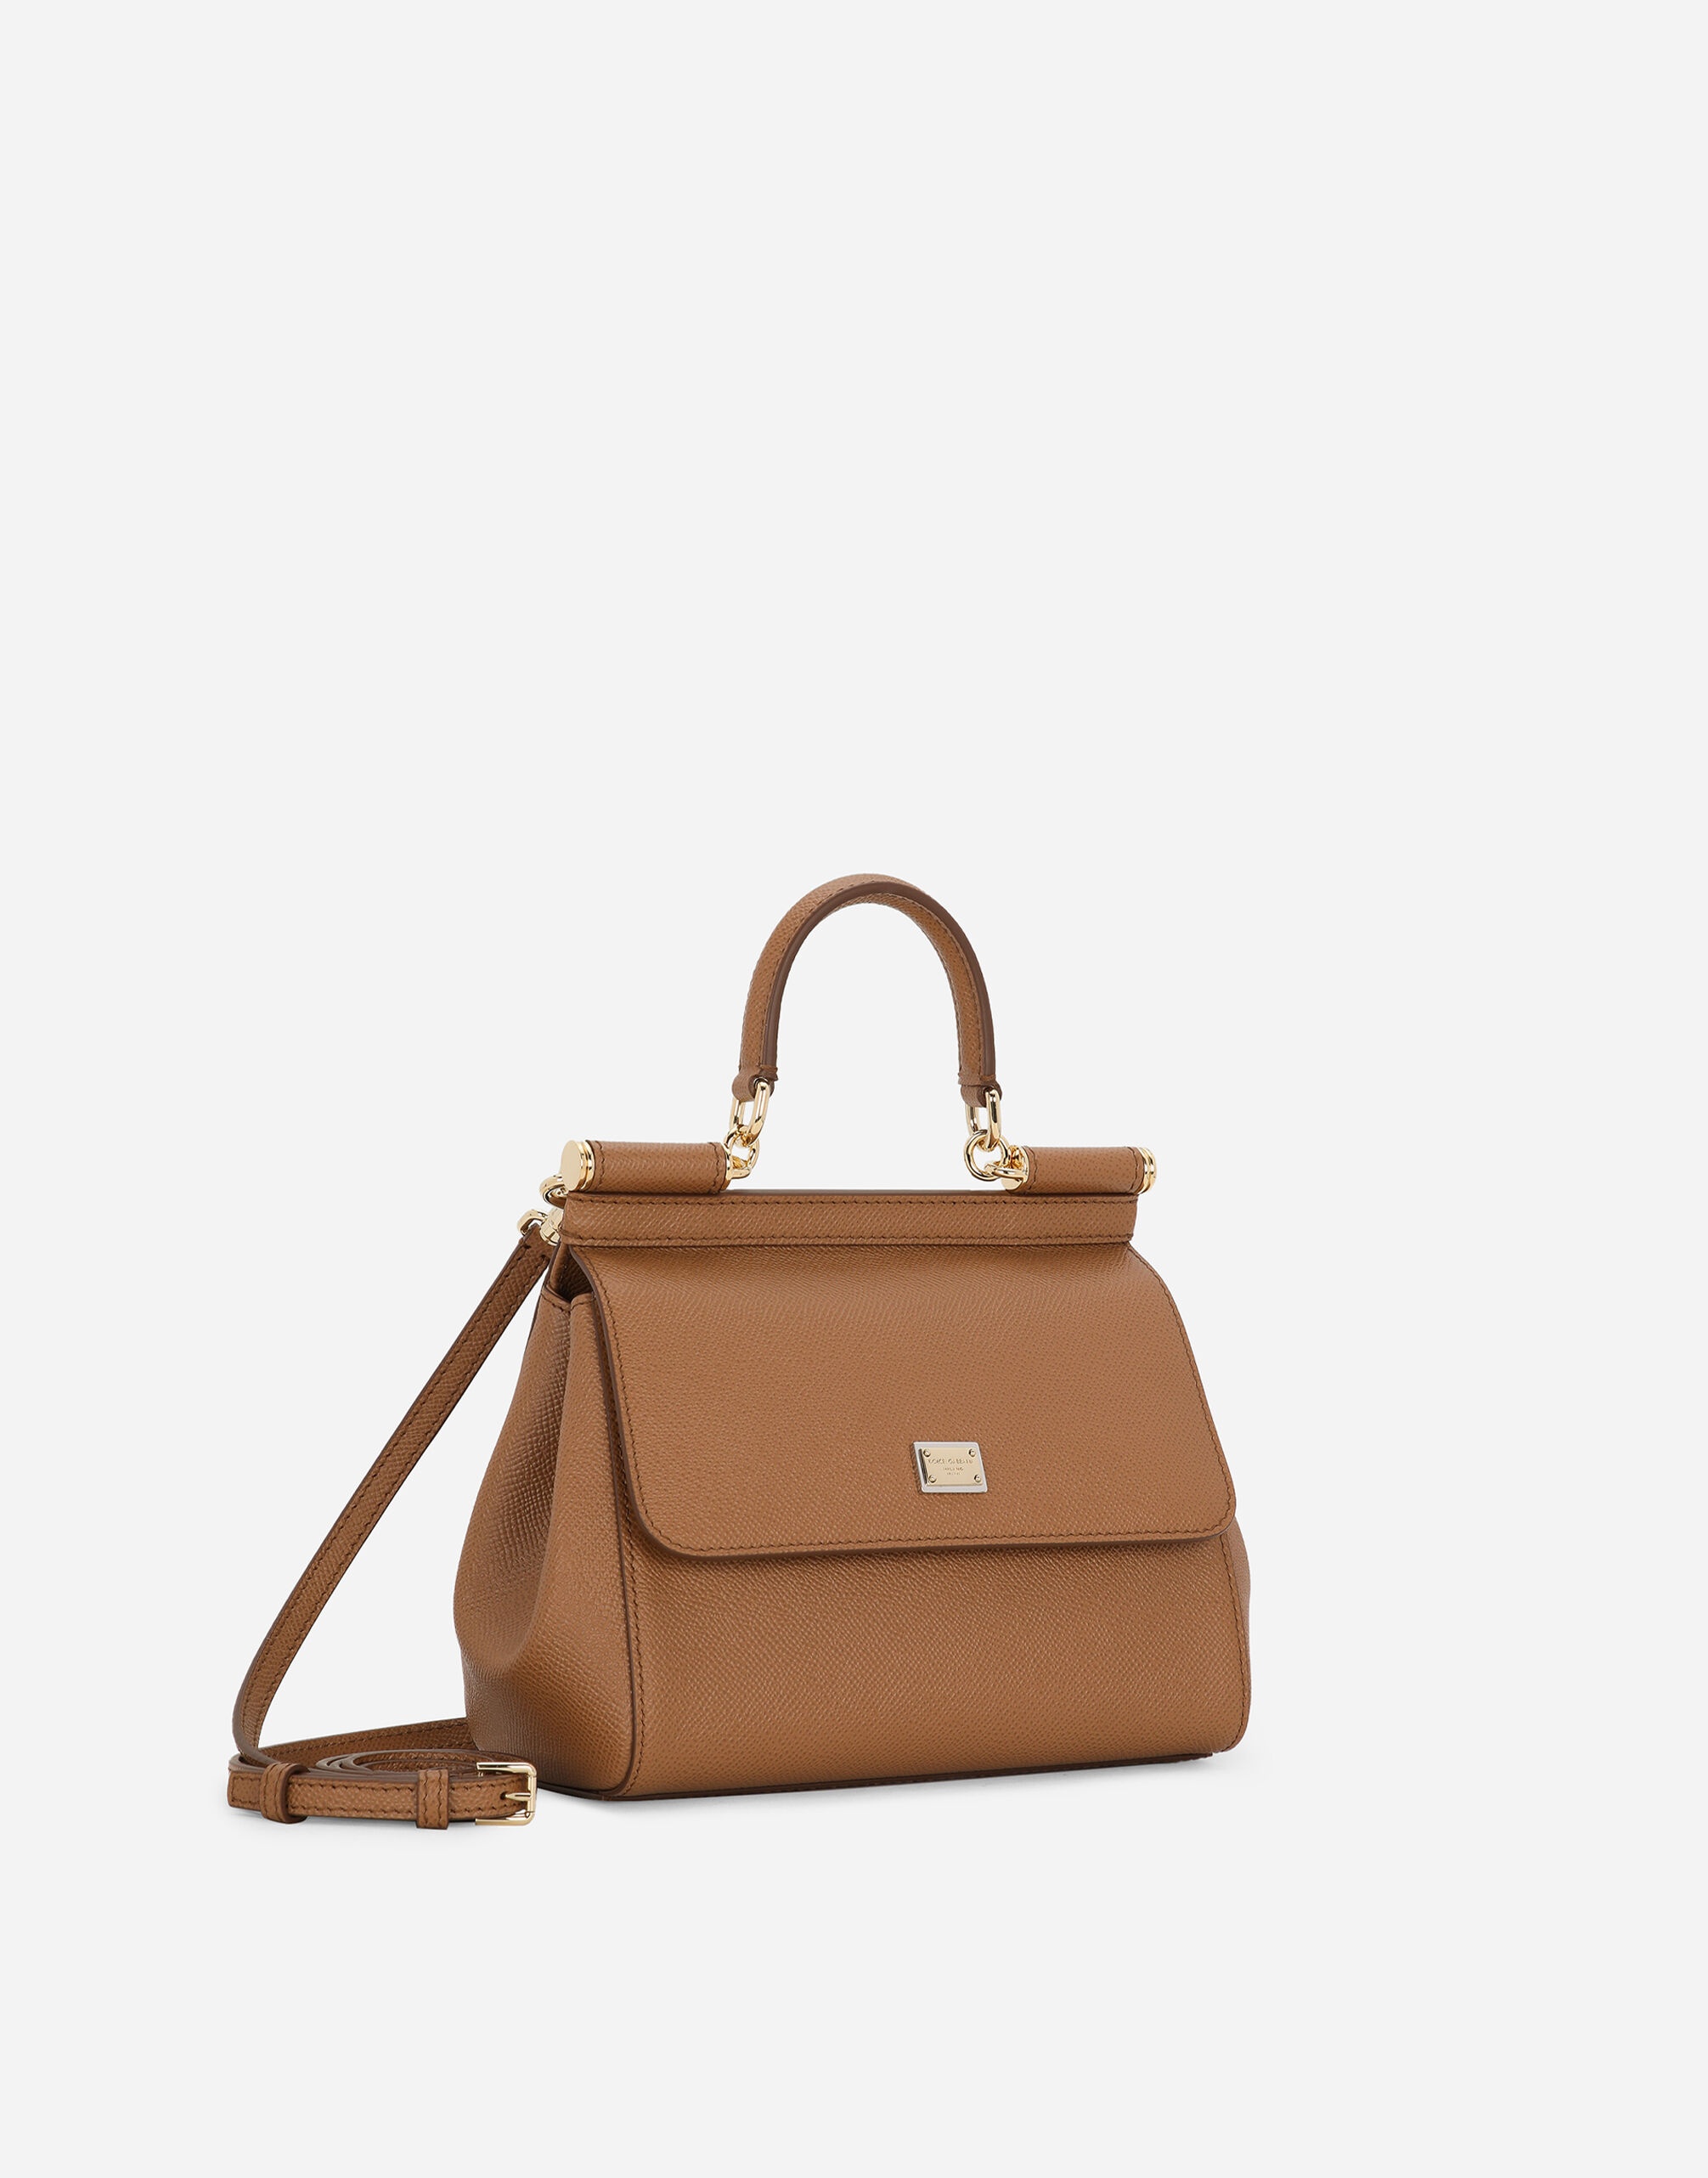 Medium Sicily handbag - 2